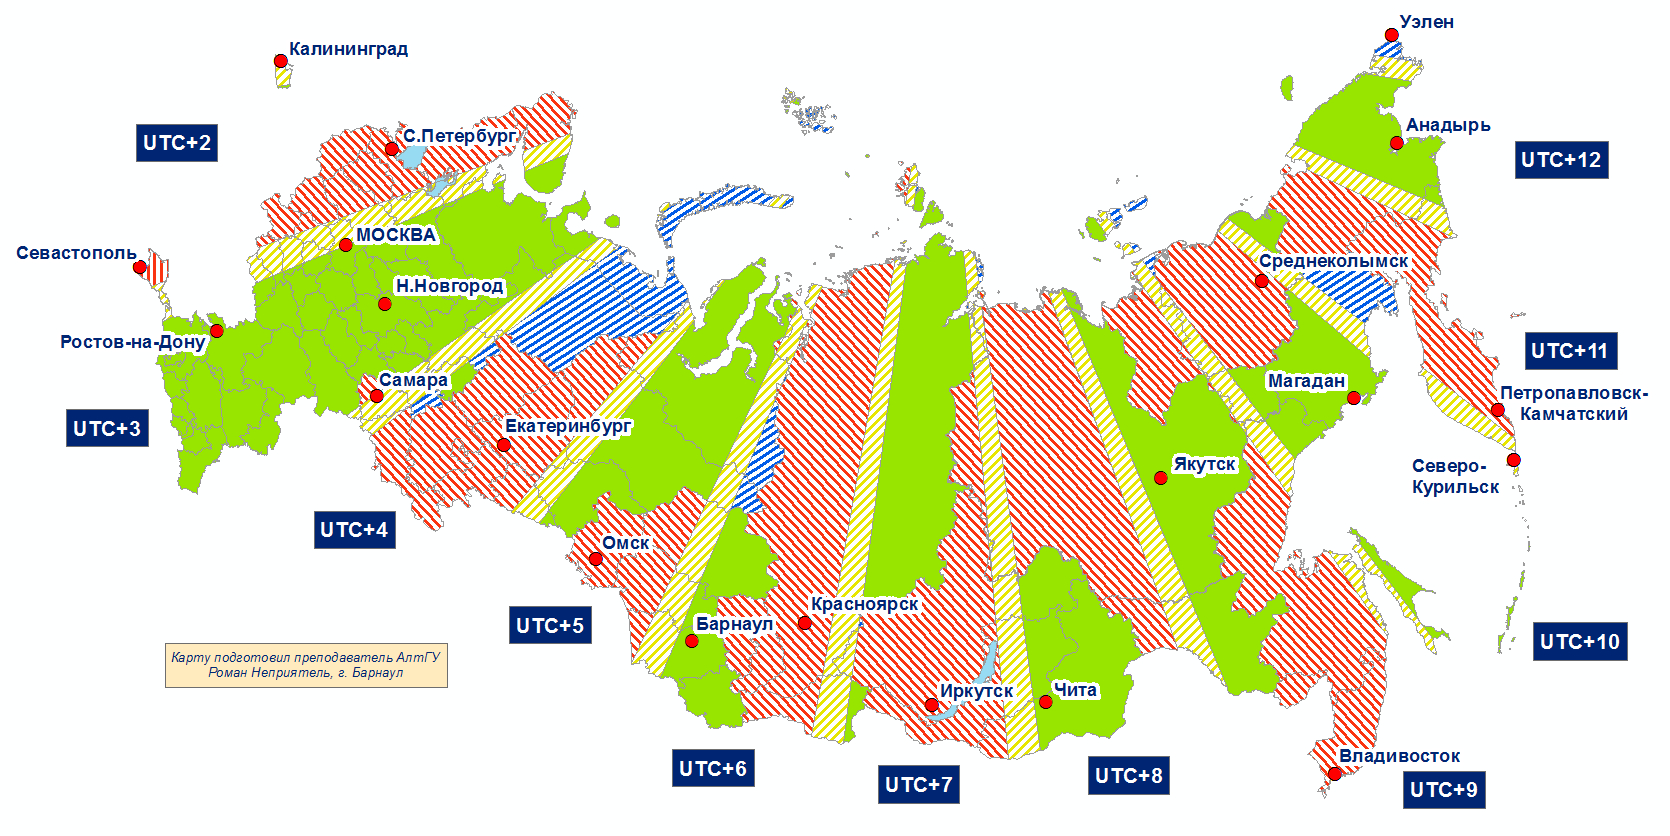 Москва gtm. Часовые пояса UTC. Часовые пояса России на карте. Карта часовых поясов России 2022. Временные зоны UTC.